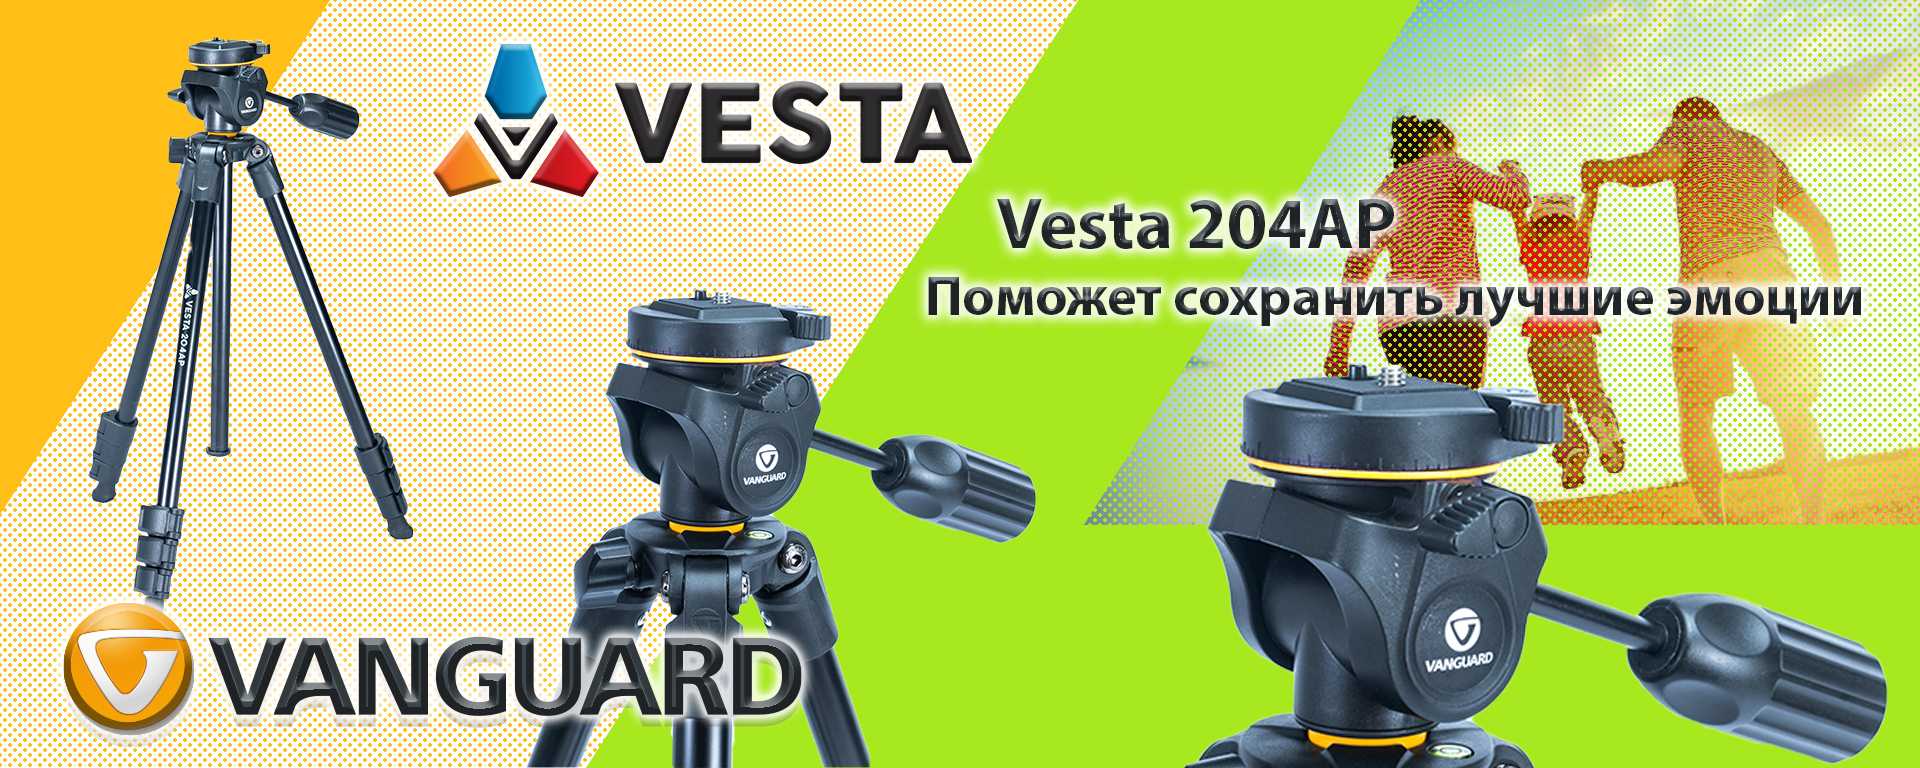 Vesta 204AP